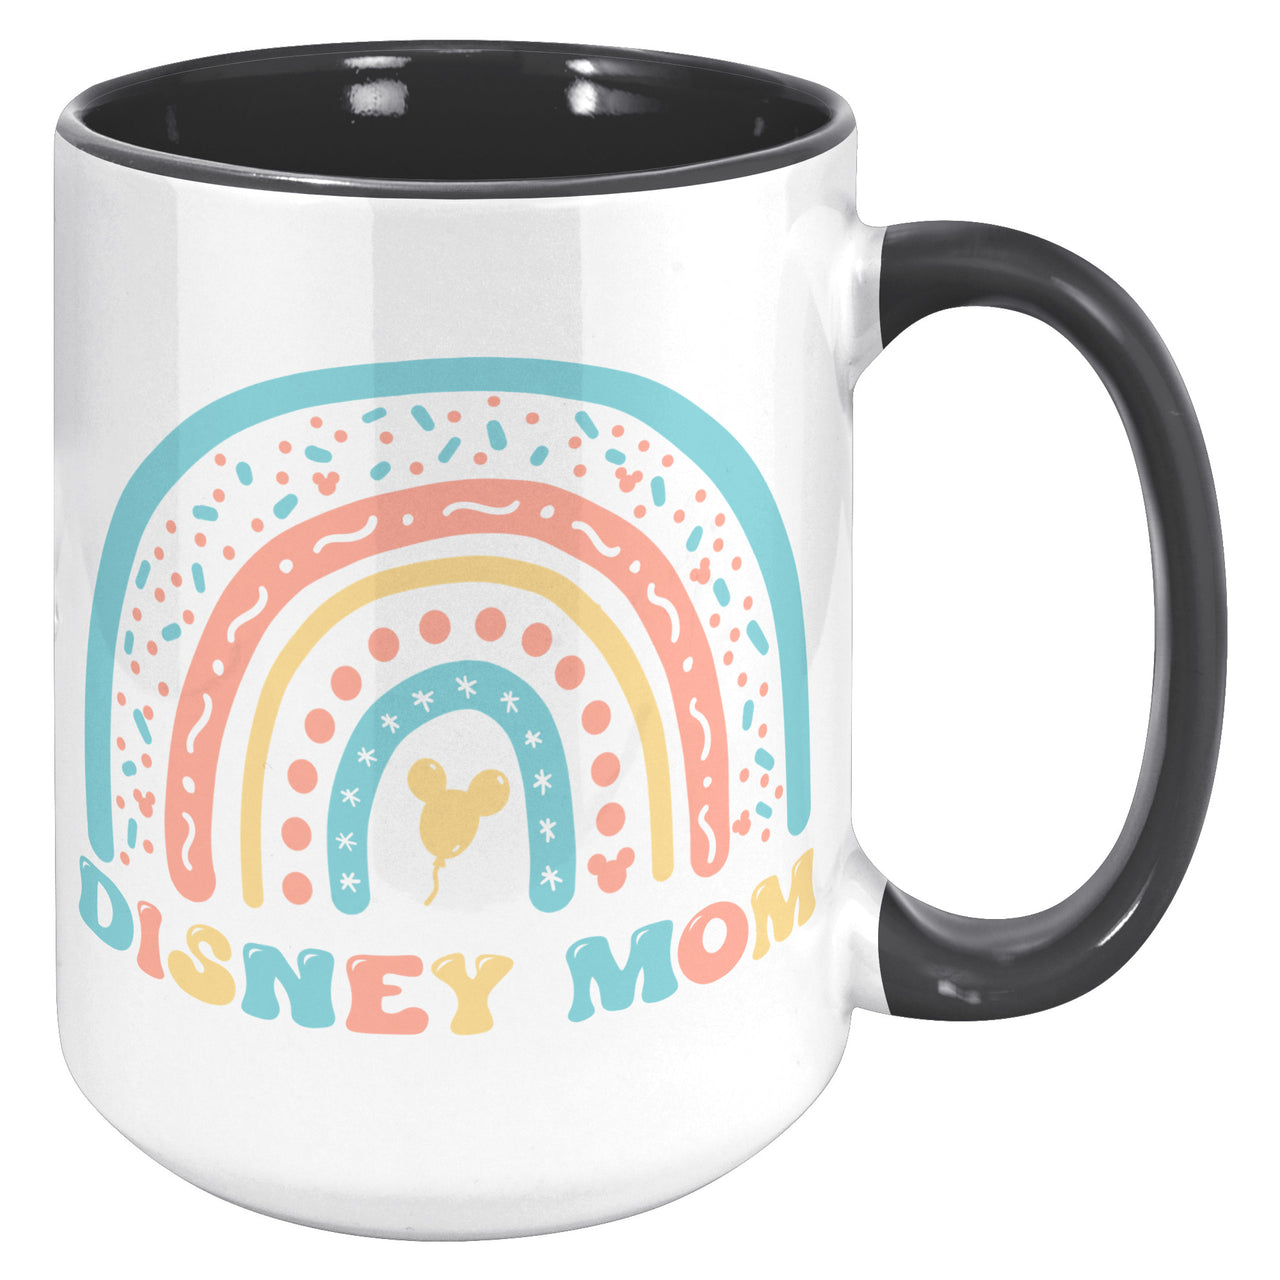 Coffee Mug - Disney Mom